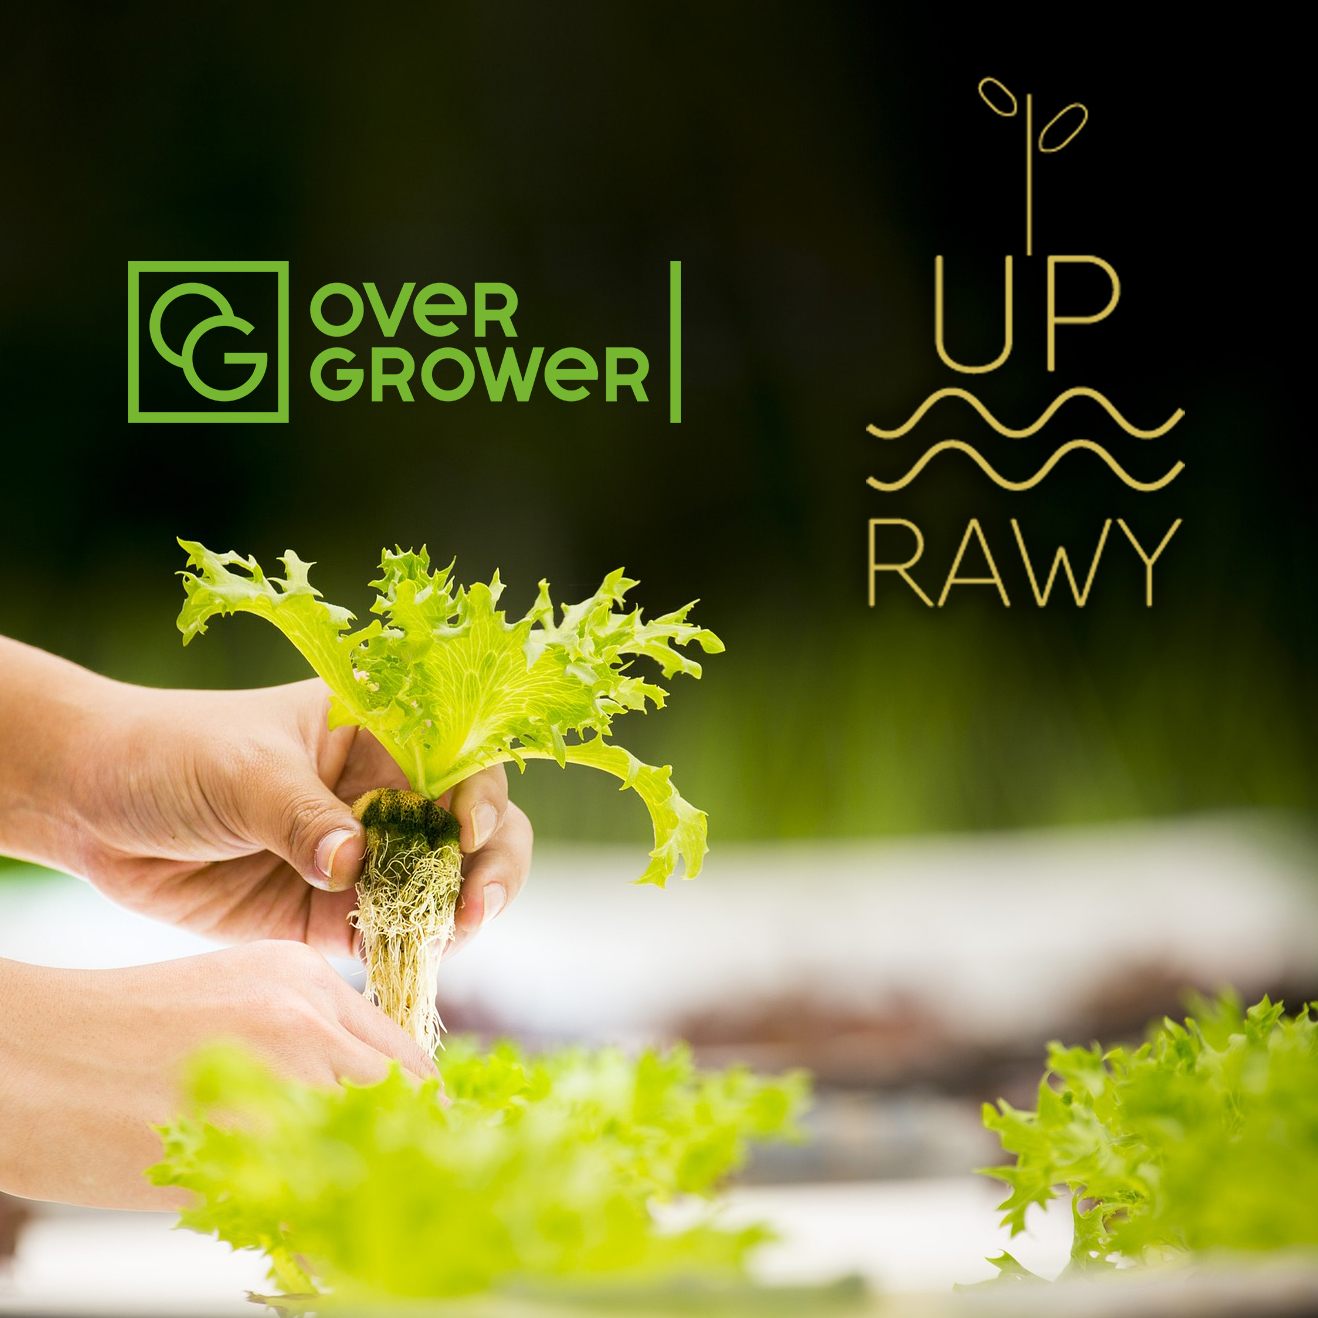 Компания UPrawy оказывают полный спектр услуг OverGrower!